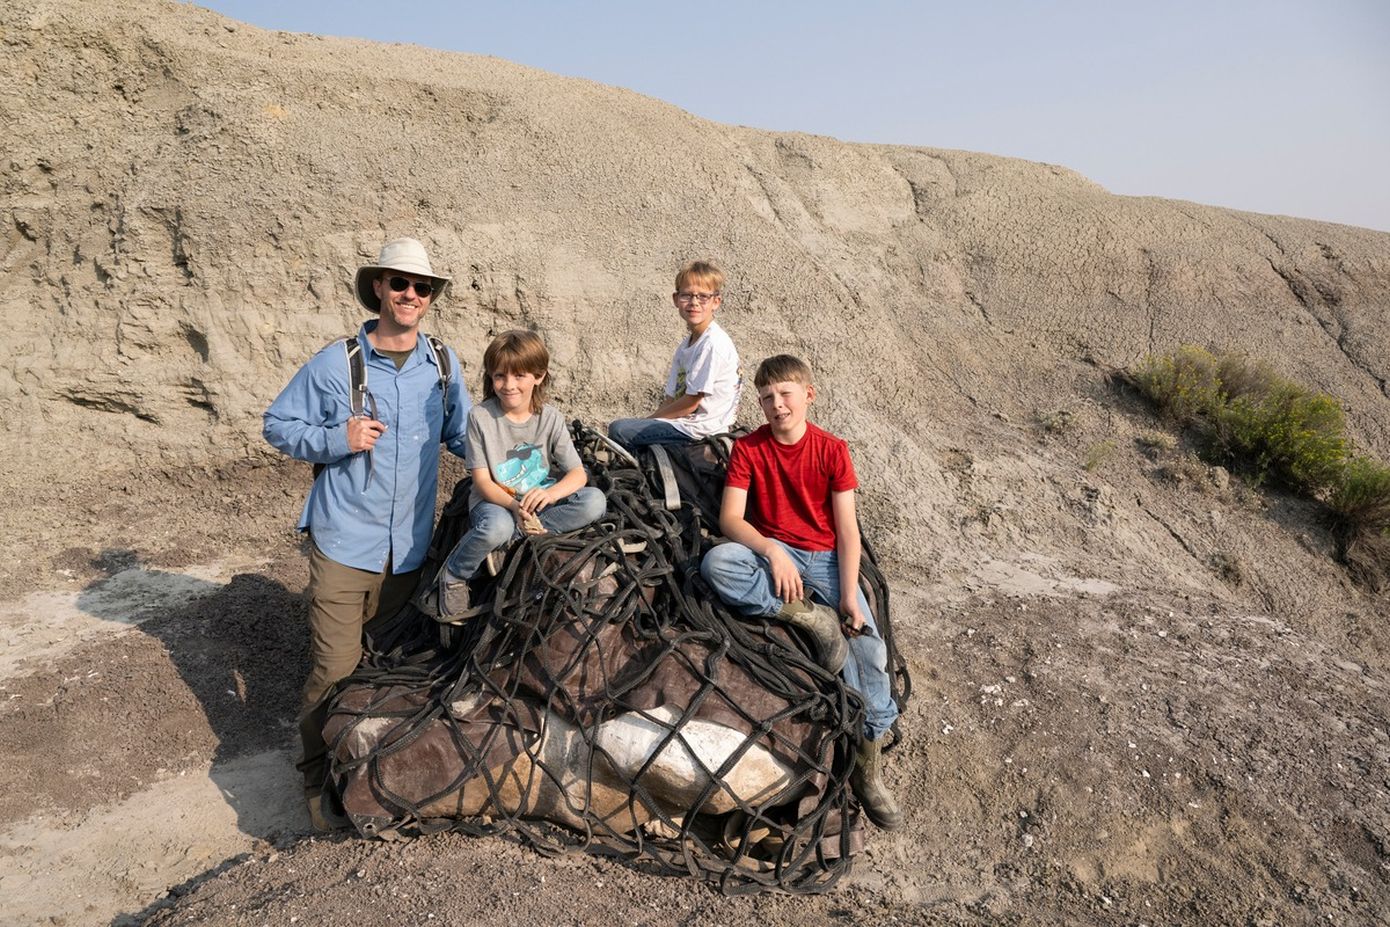 Σπάνια ανακάλυψη από τρία παιδιά που έκαναν βόλτα – Βρήκαν απολιθωμένο οστό νεαρού Τυραννόσαυρου Ρεξ